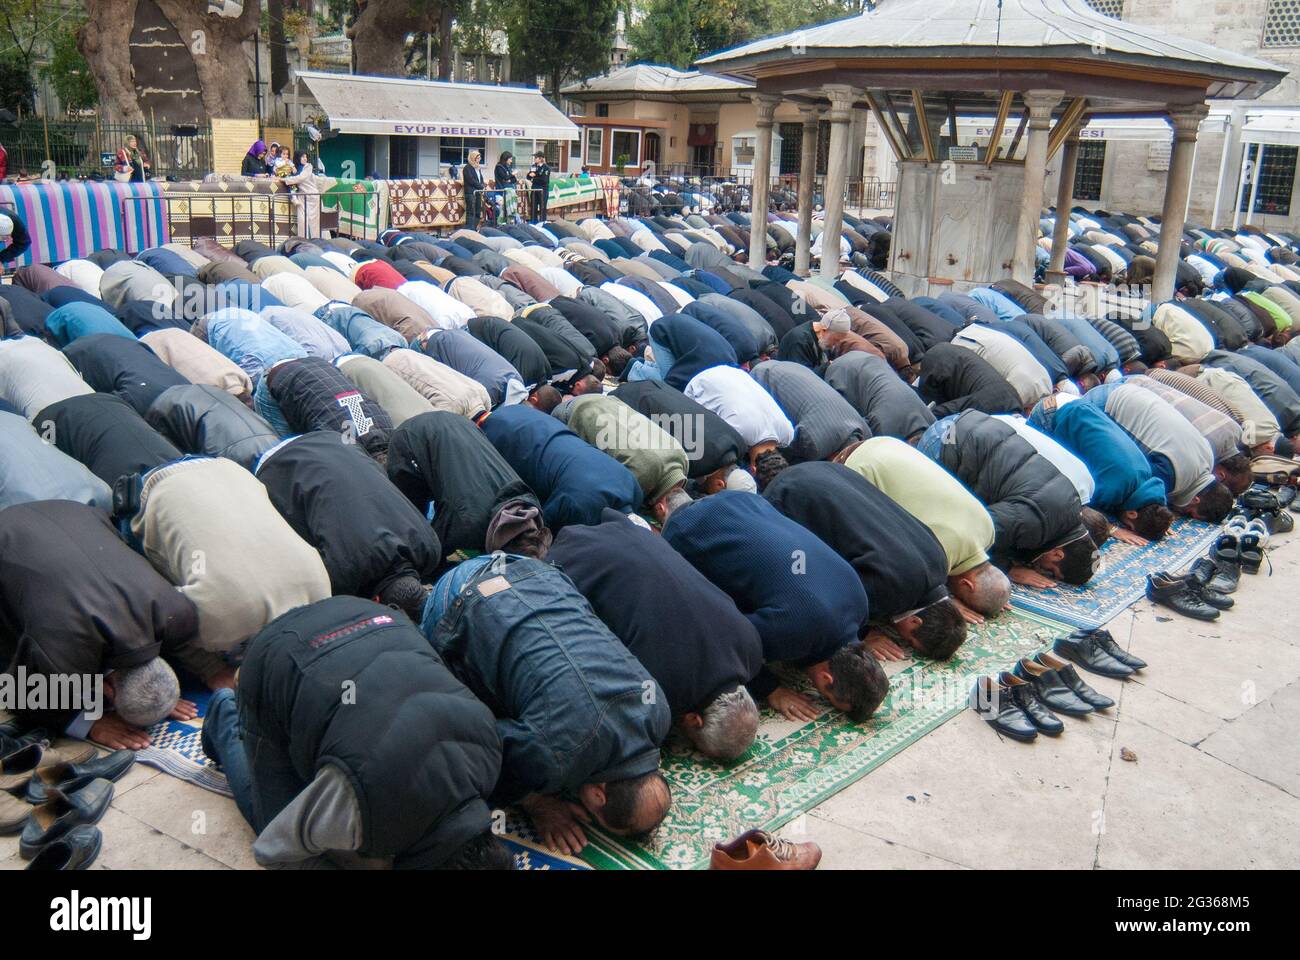 Eyup Sultan/İstanbul -11/07/2008 :Muslime beten während des muslimischen Freitagsgottesdienstes in der Eyup Sultan Moschee in Istanbul, Türkei Stockfoto